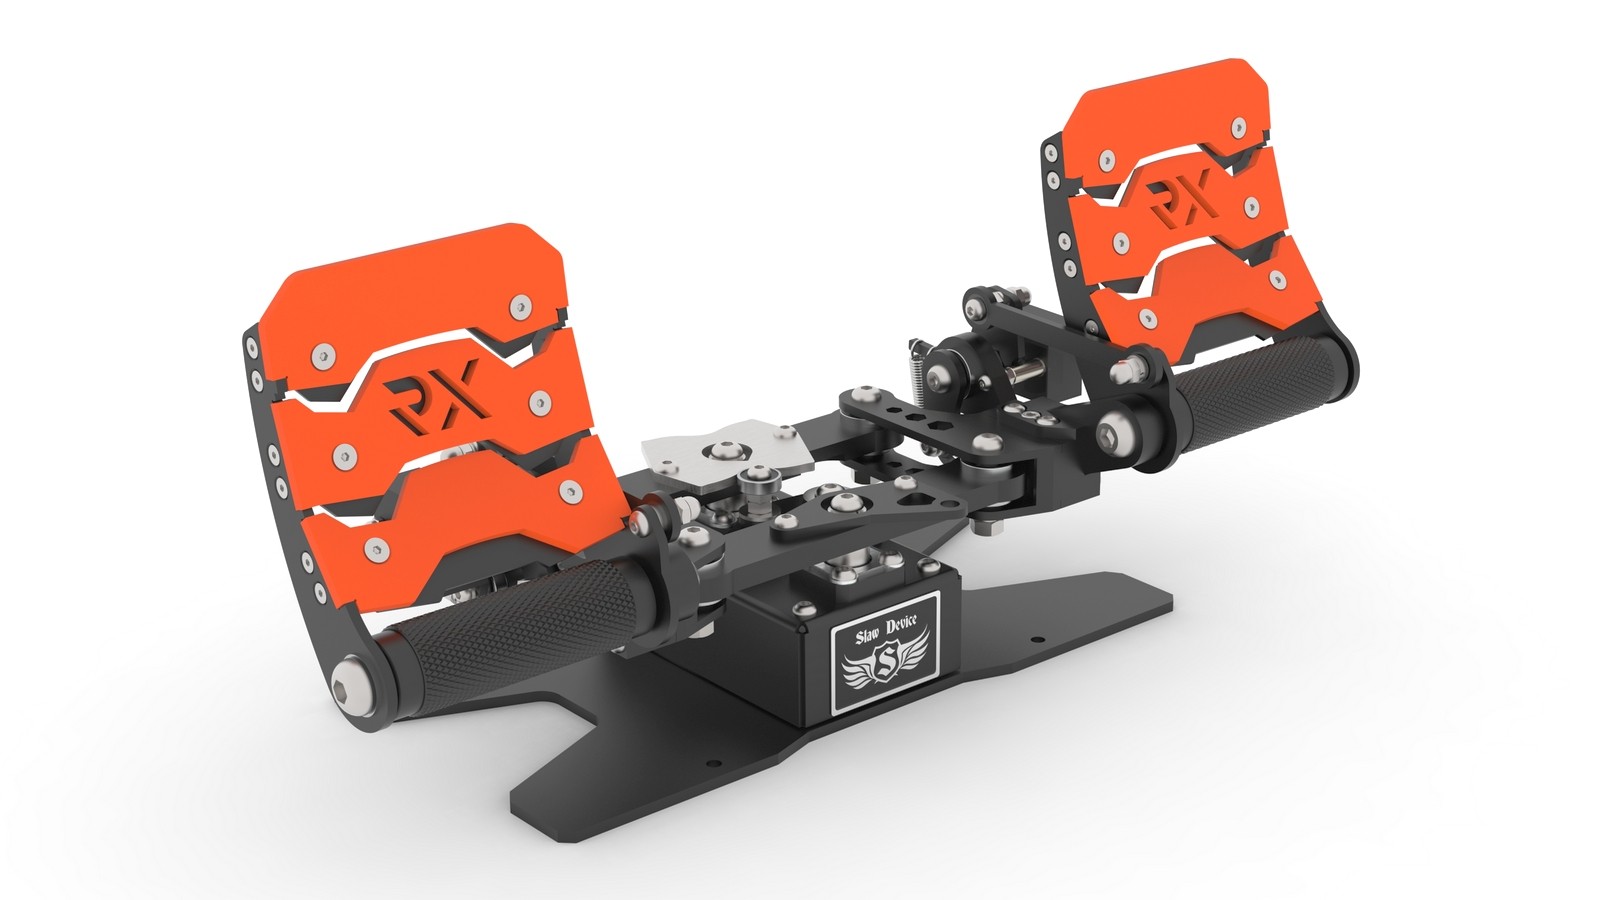 RX Viper V3 rudder pedals design completed!